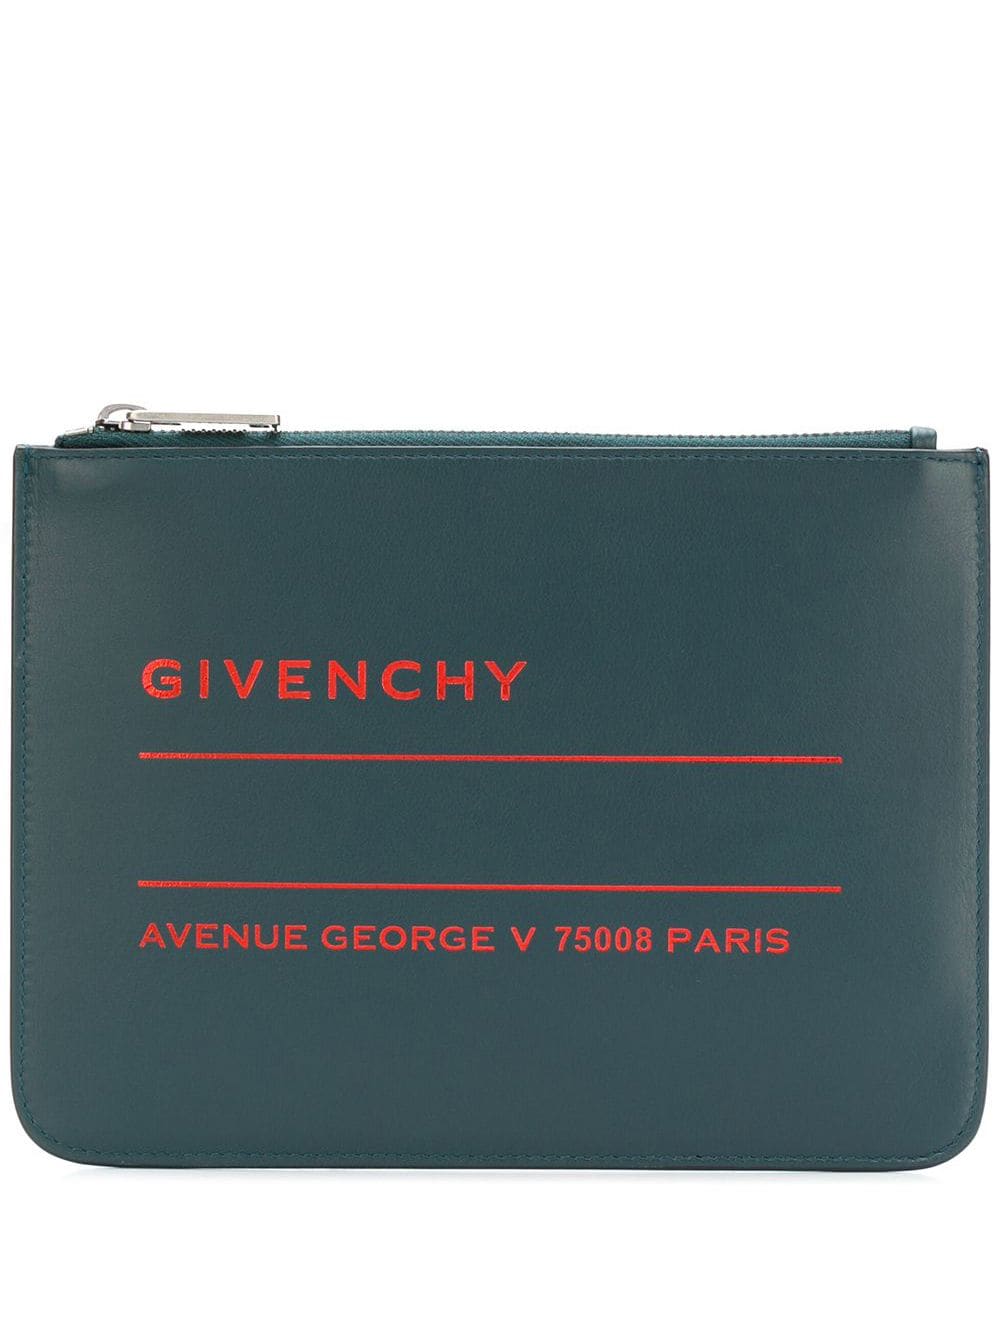 фото Givenchy клатч с принтом логотипа